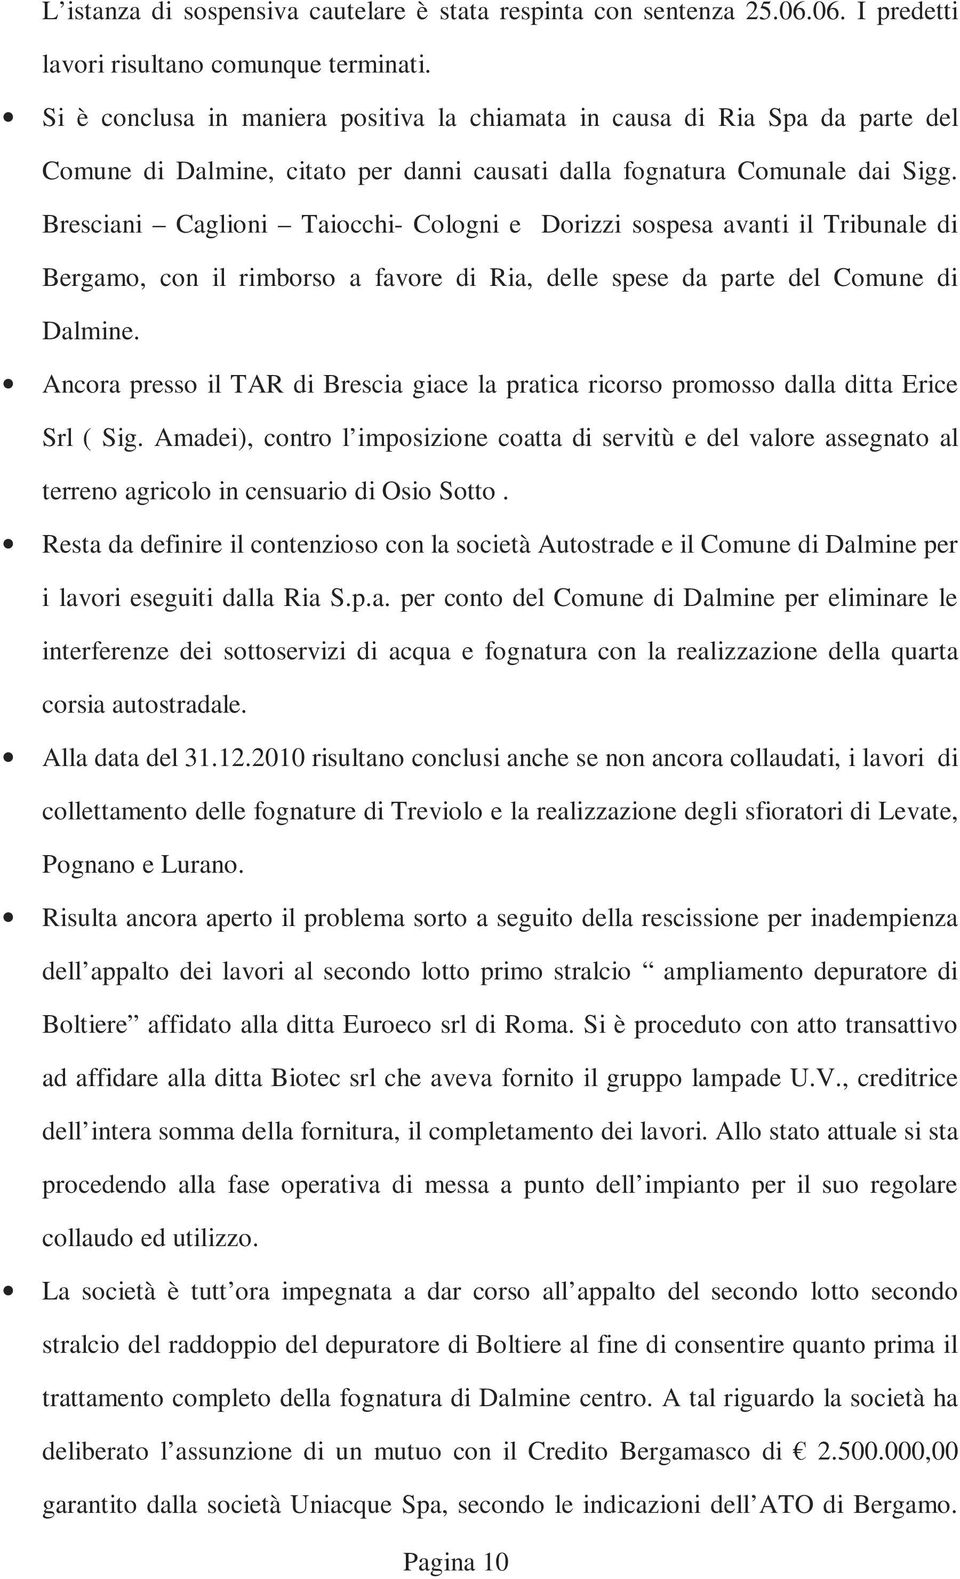 Bresciani Caglioni Taiocchi- Cologni e Dorizzi sospesa avanti il Tribunale di Bergamo, con il rimborso a favore di Ria, delle spese da parte del Comune di Dalmine.